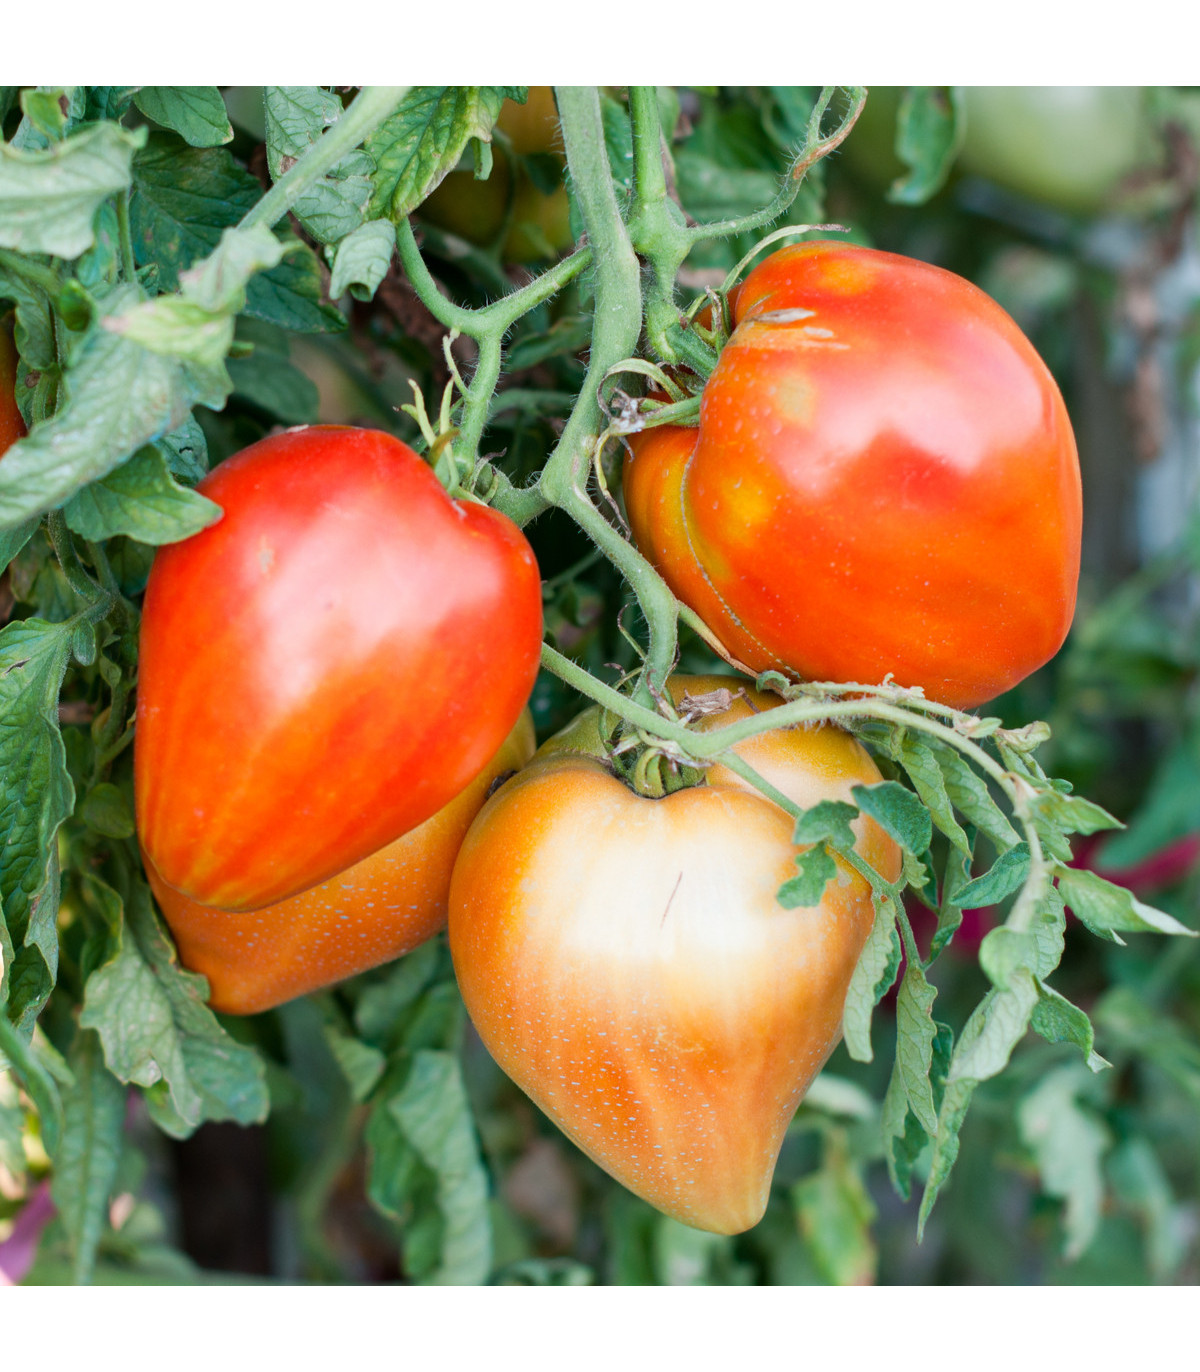 Rajče Big Mama F1 - Solanum lycopersicum - osivo rajčat - 7 ks